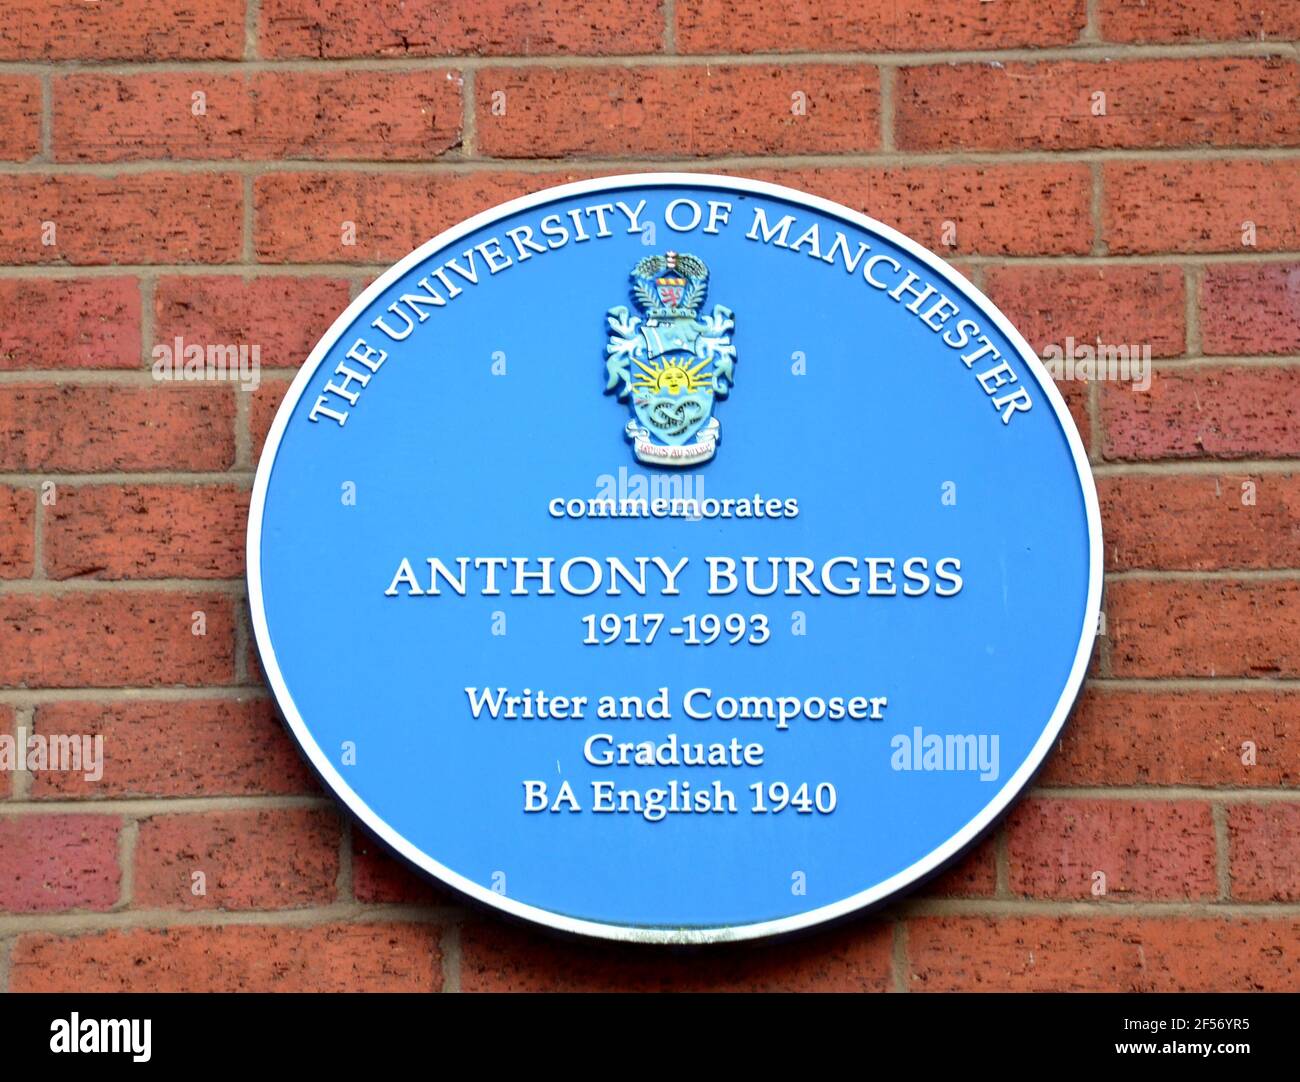 Una placa conmemorativa azul en Manchester, reino unido, para recordar a Anthony Burgess, famoso autor y graduado de la Universidad de Manchester Foto de stock